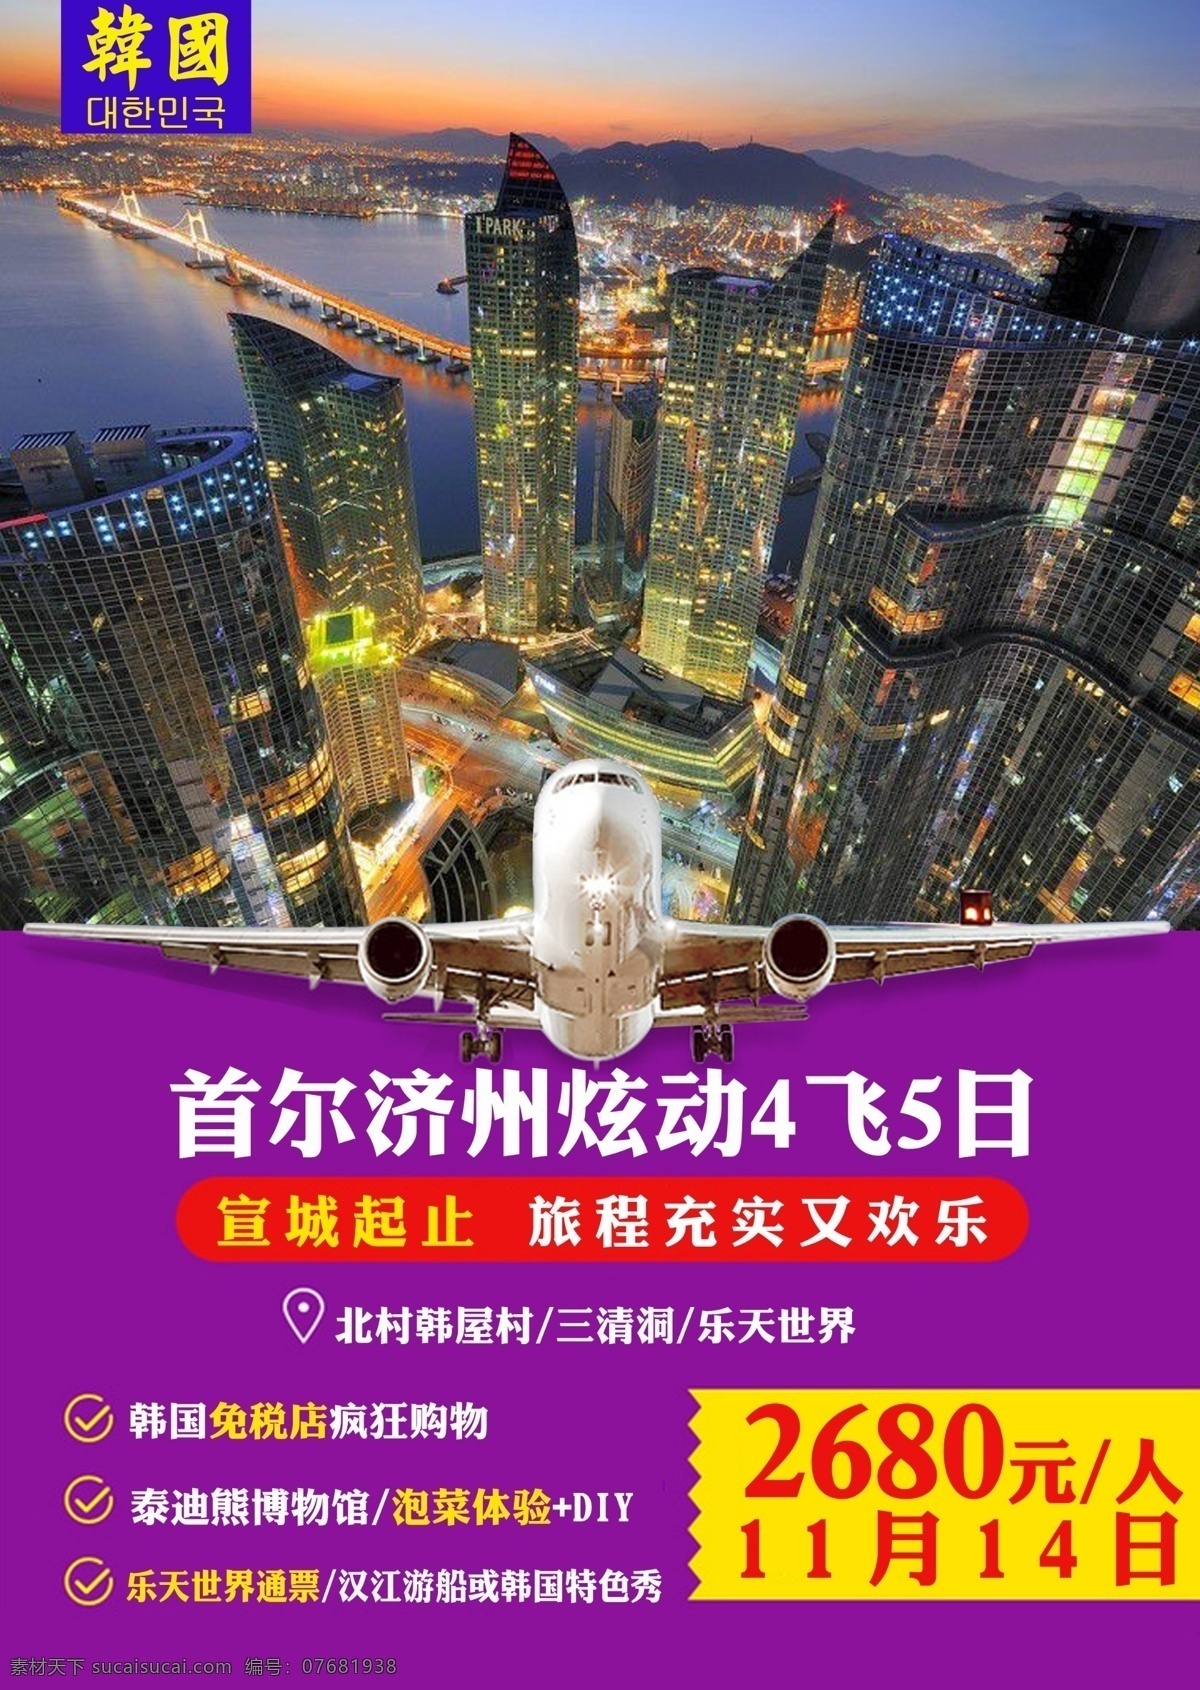 韩国旅游海报 韩国 首尔 海报 旅游 高楼